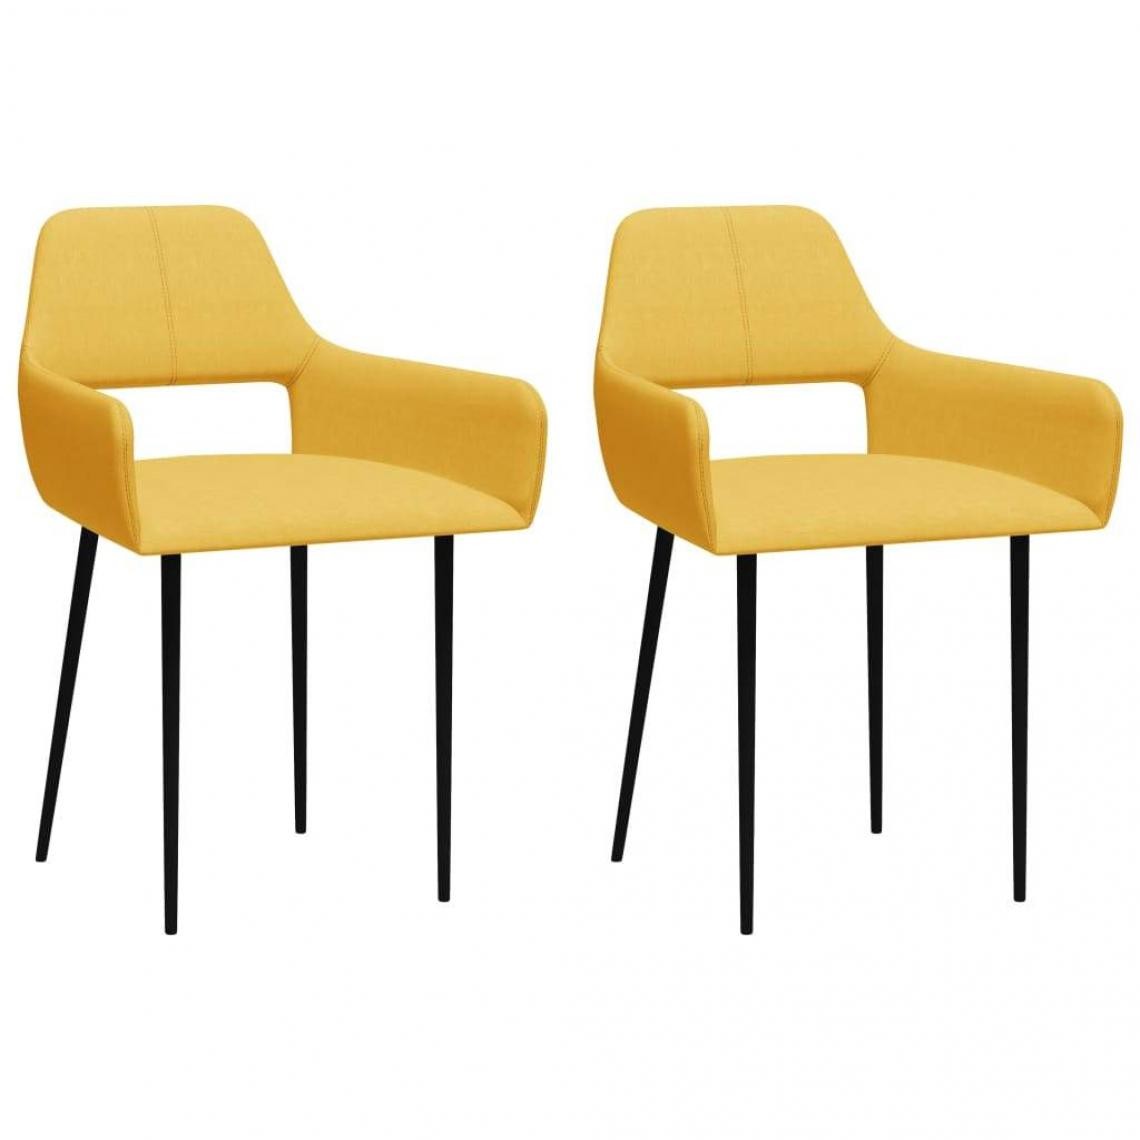 Decoshop26 - Lot de 2 chaises de salle à manger cuisine design moderne tissu jaune CDS020651 - Chaises